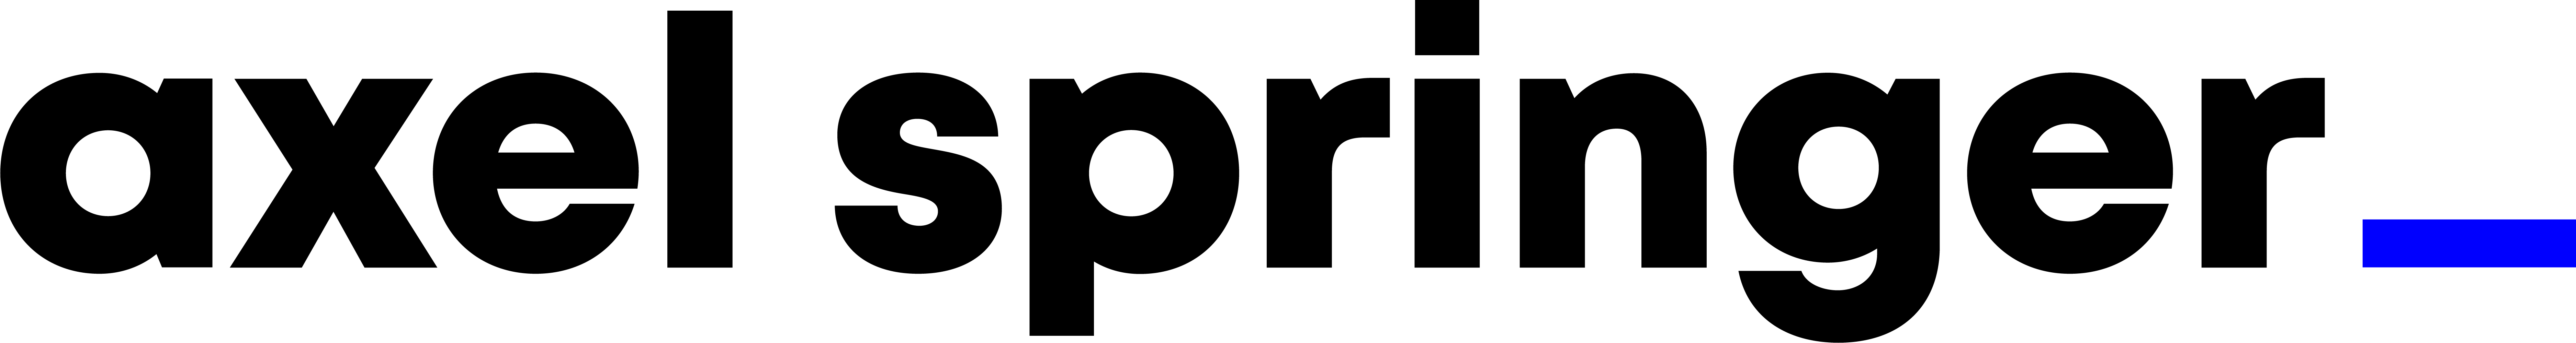 Axel Springer-logo